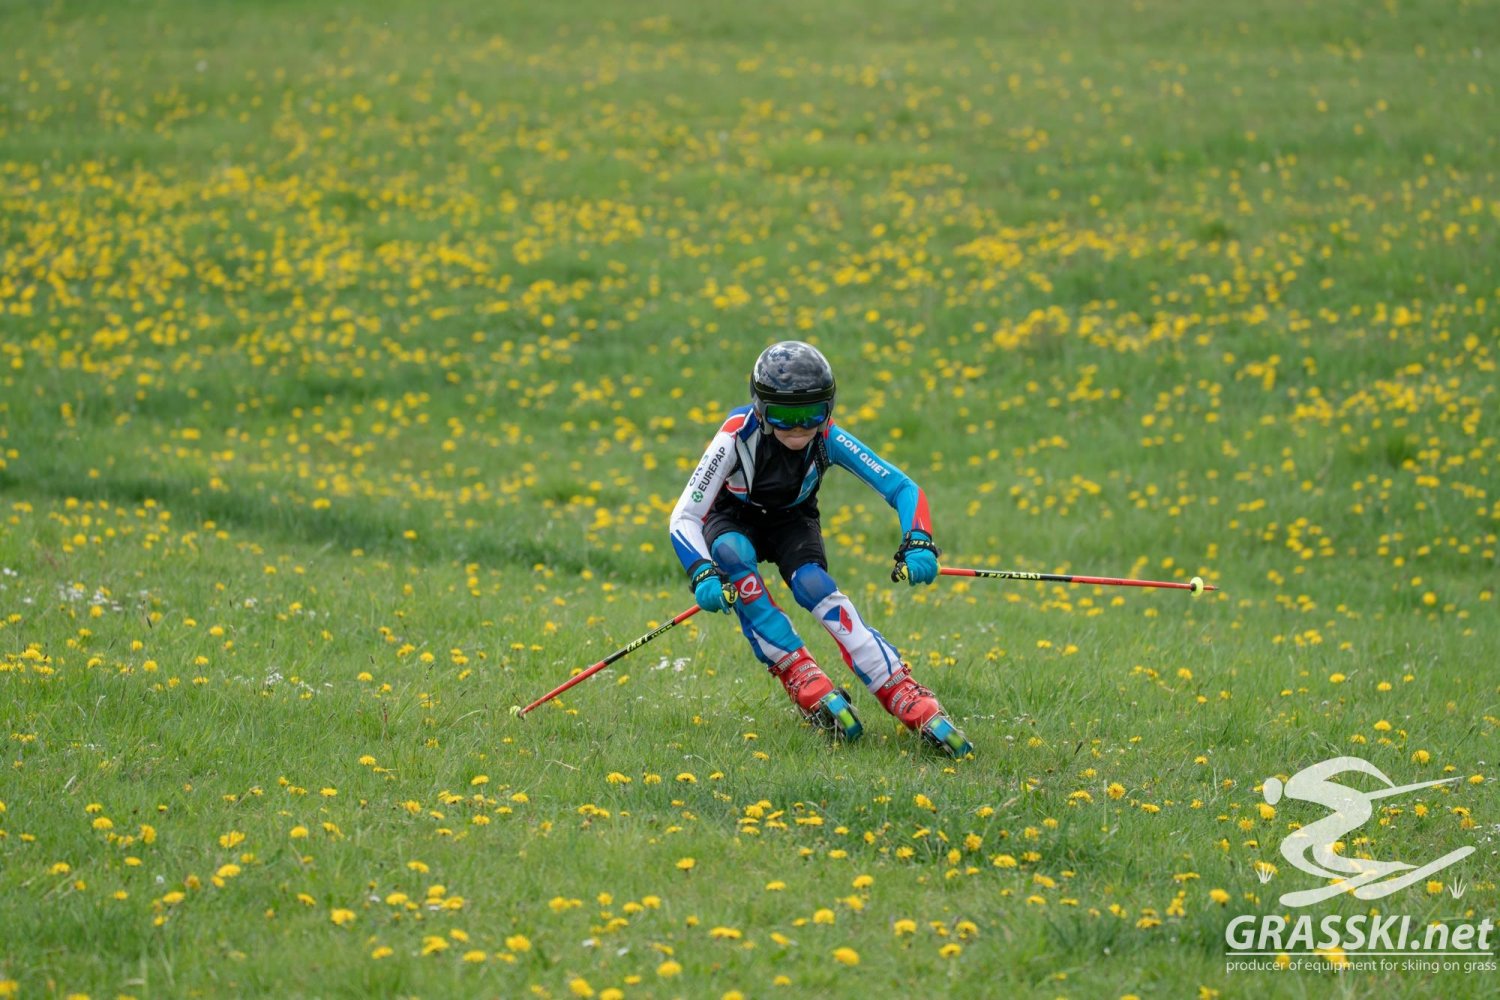 First skiing in grasski season 2020